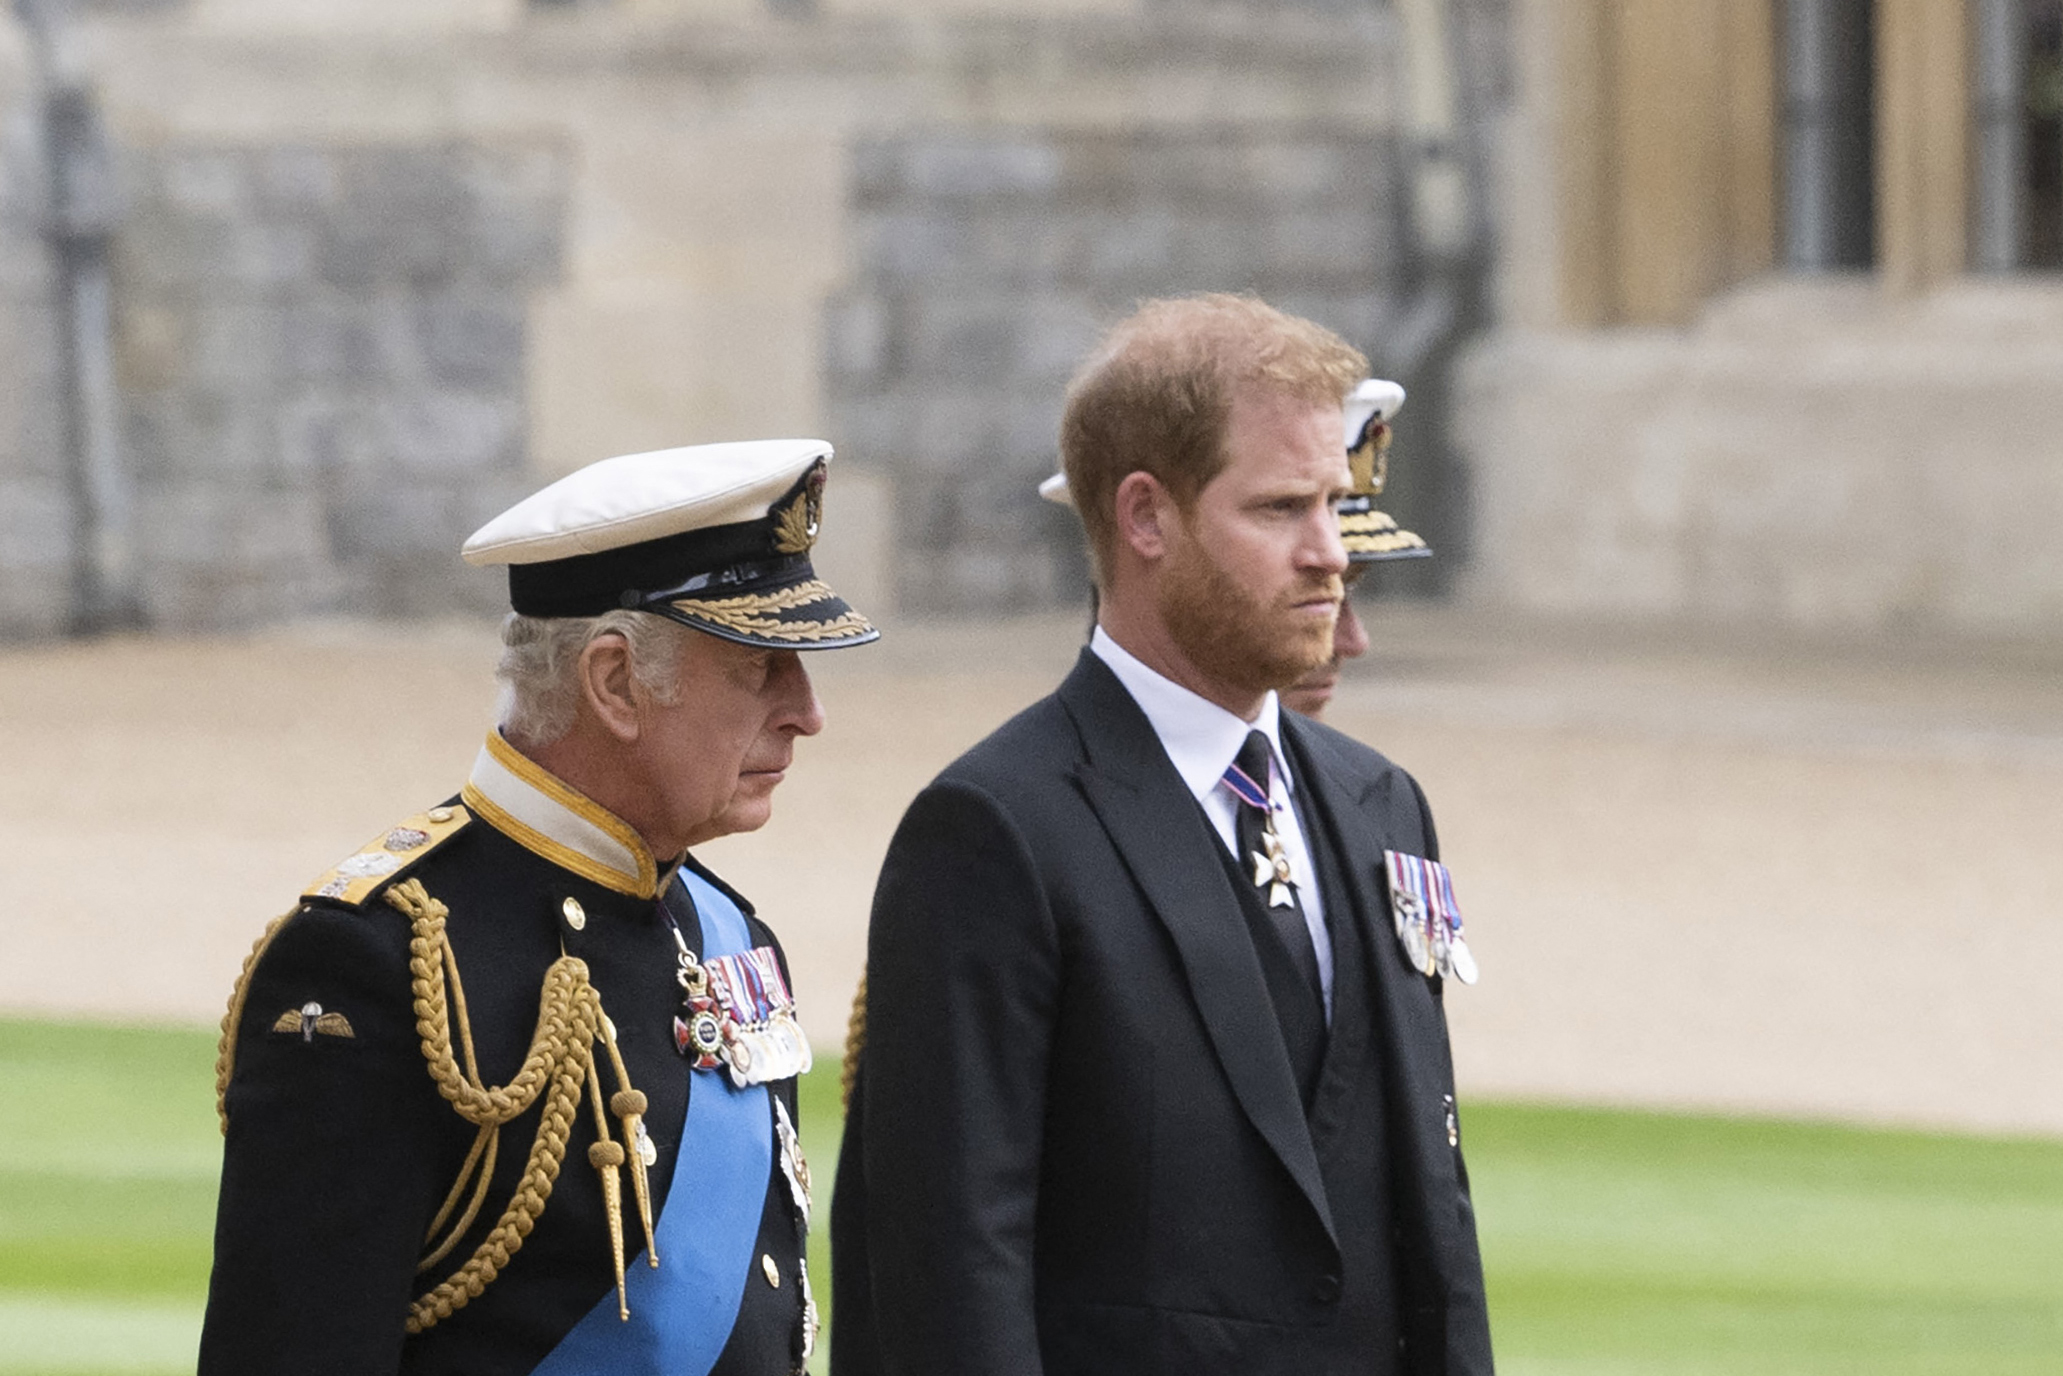 König Charles III. und Prinz Harry vor der Trauerfeier für die verstorbene Königin Elizabeth II. in Windsor, England am 19. September 2022 | Quelle: Getty Images